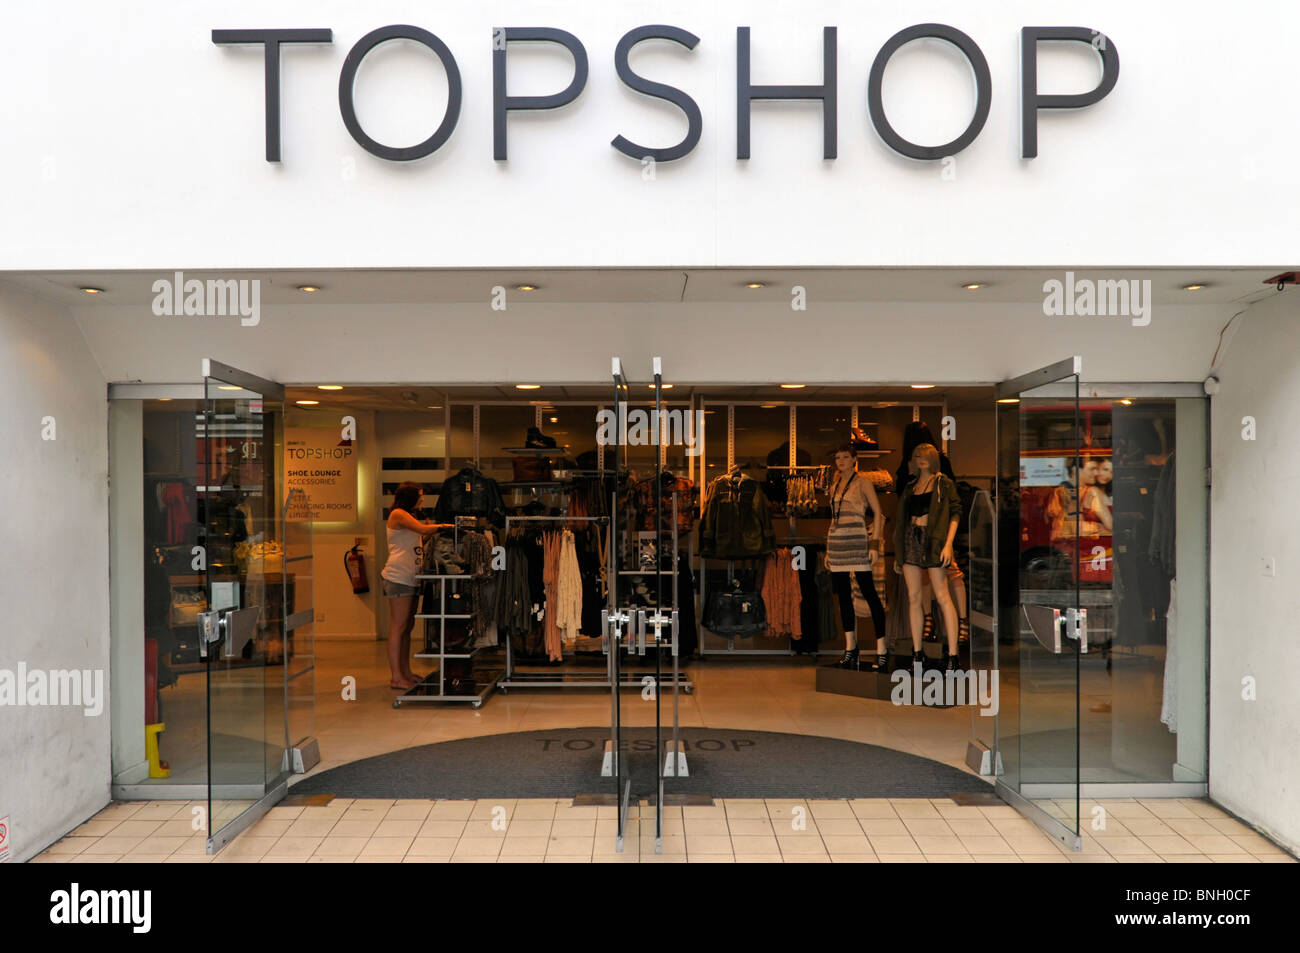 Topshop partie d'un groupe d'affaires d'Arcadia La mode au détail magasin de vêtements/portes d'entrée et l'intérieur Le Strand London England UK Banque D'Images